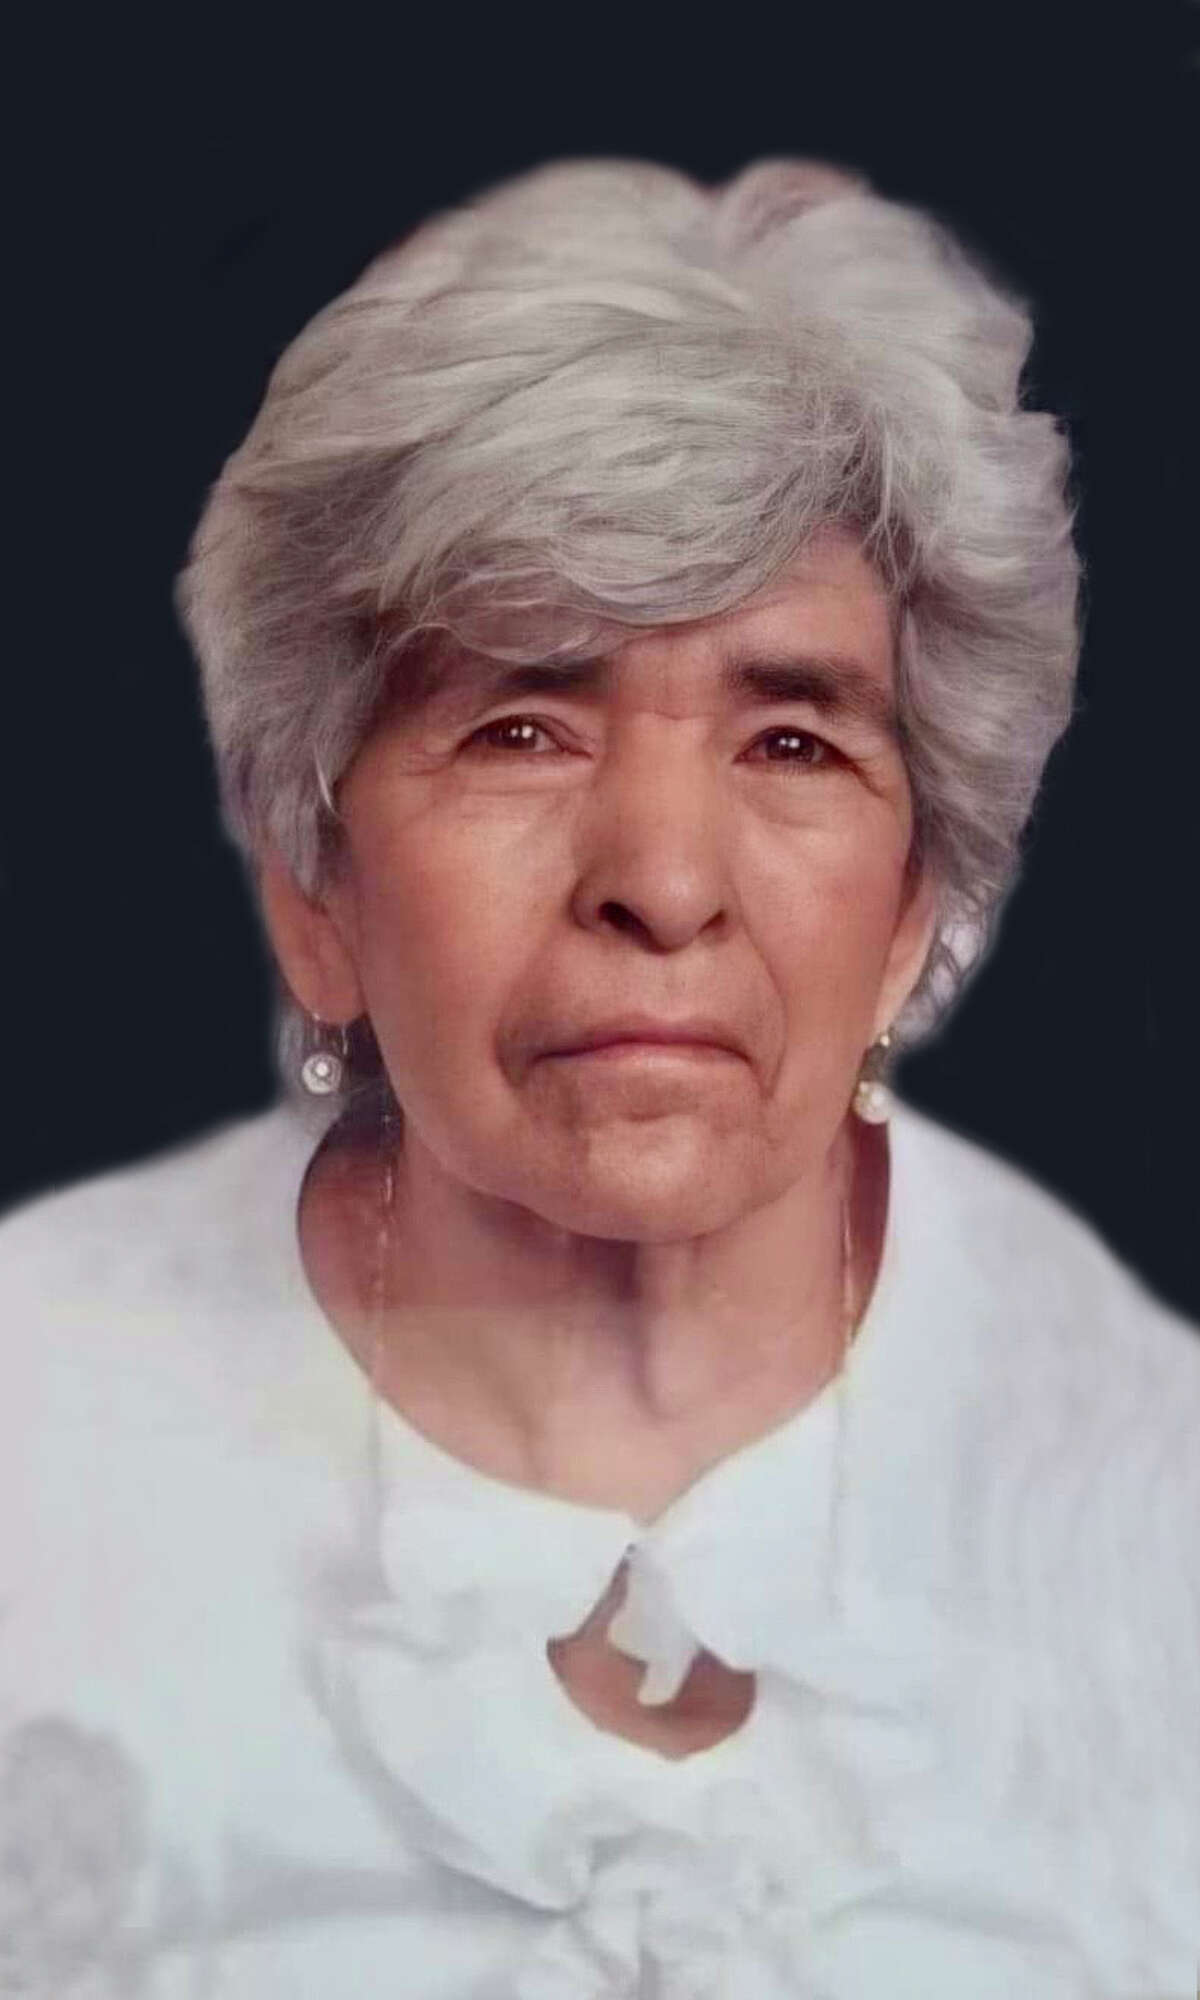 María Villanueva